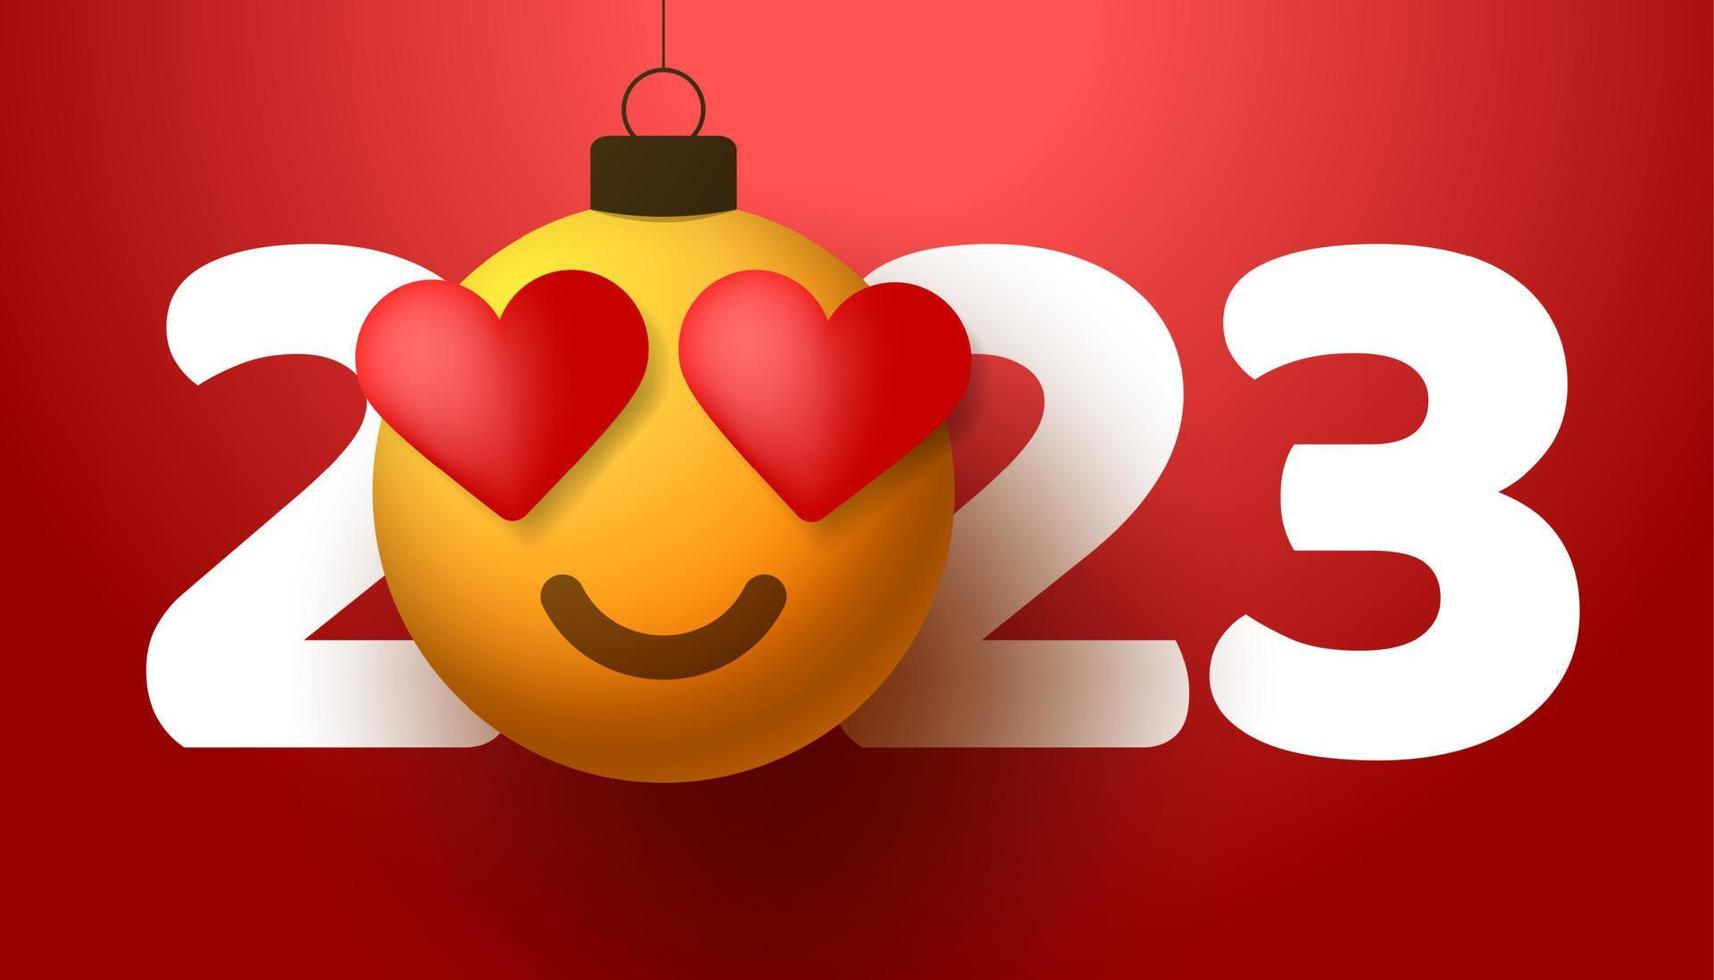 feliz año nuevo 2023 con emoción de sonrisa de corazón. ilustración vectorial en estilo plano con el número 2023 y la emoción del corazón del amor en la bola de navidad cuelga del hilo. vector